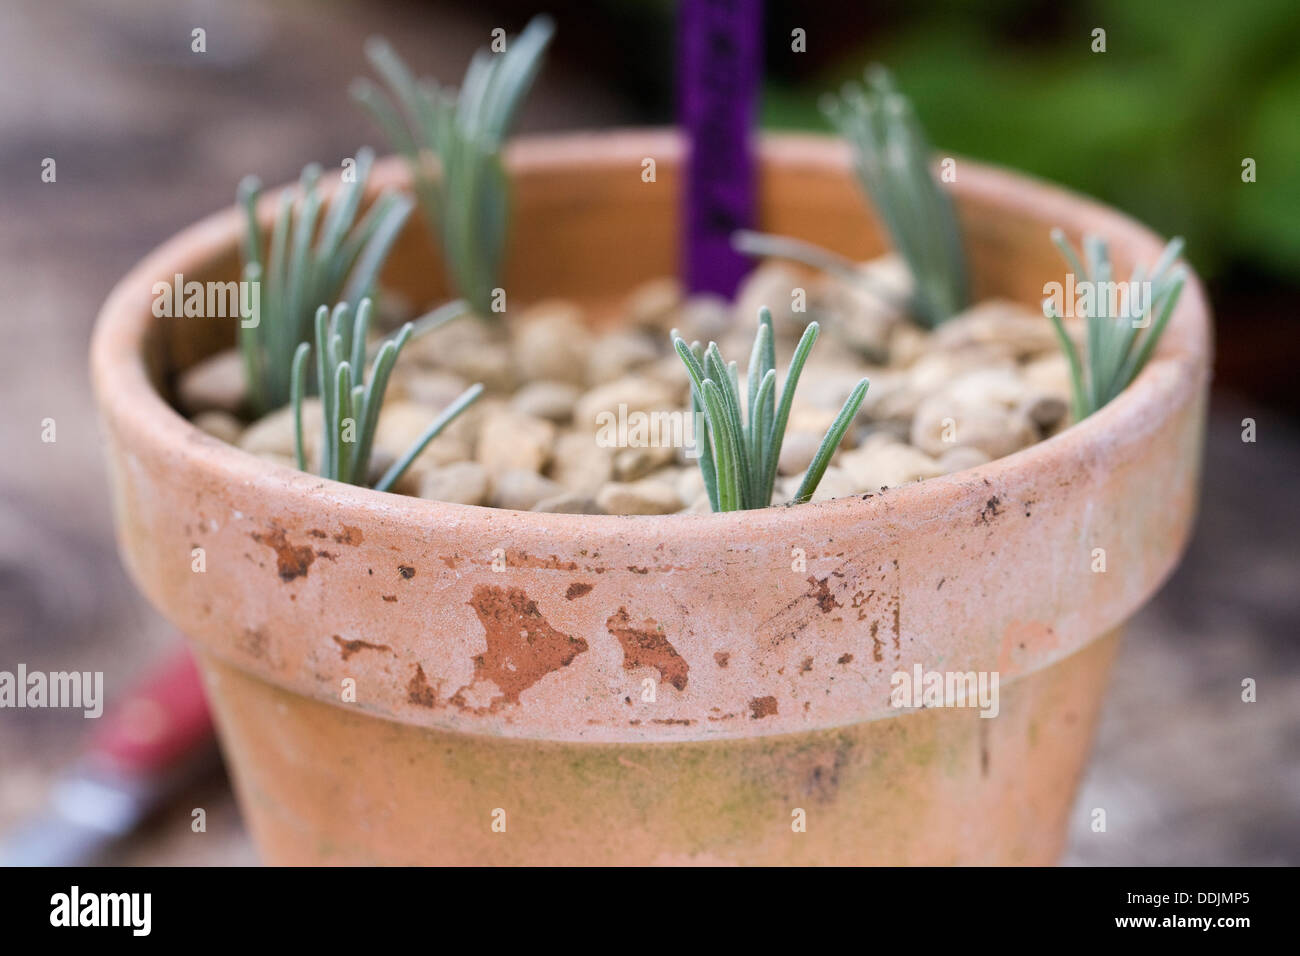 Lavandula cuttings. Semi ripe lavender cuttings in a terracotta pot. Stock Photo